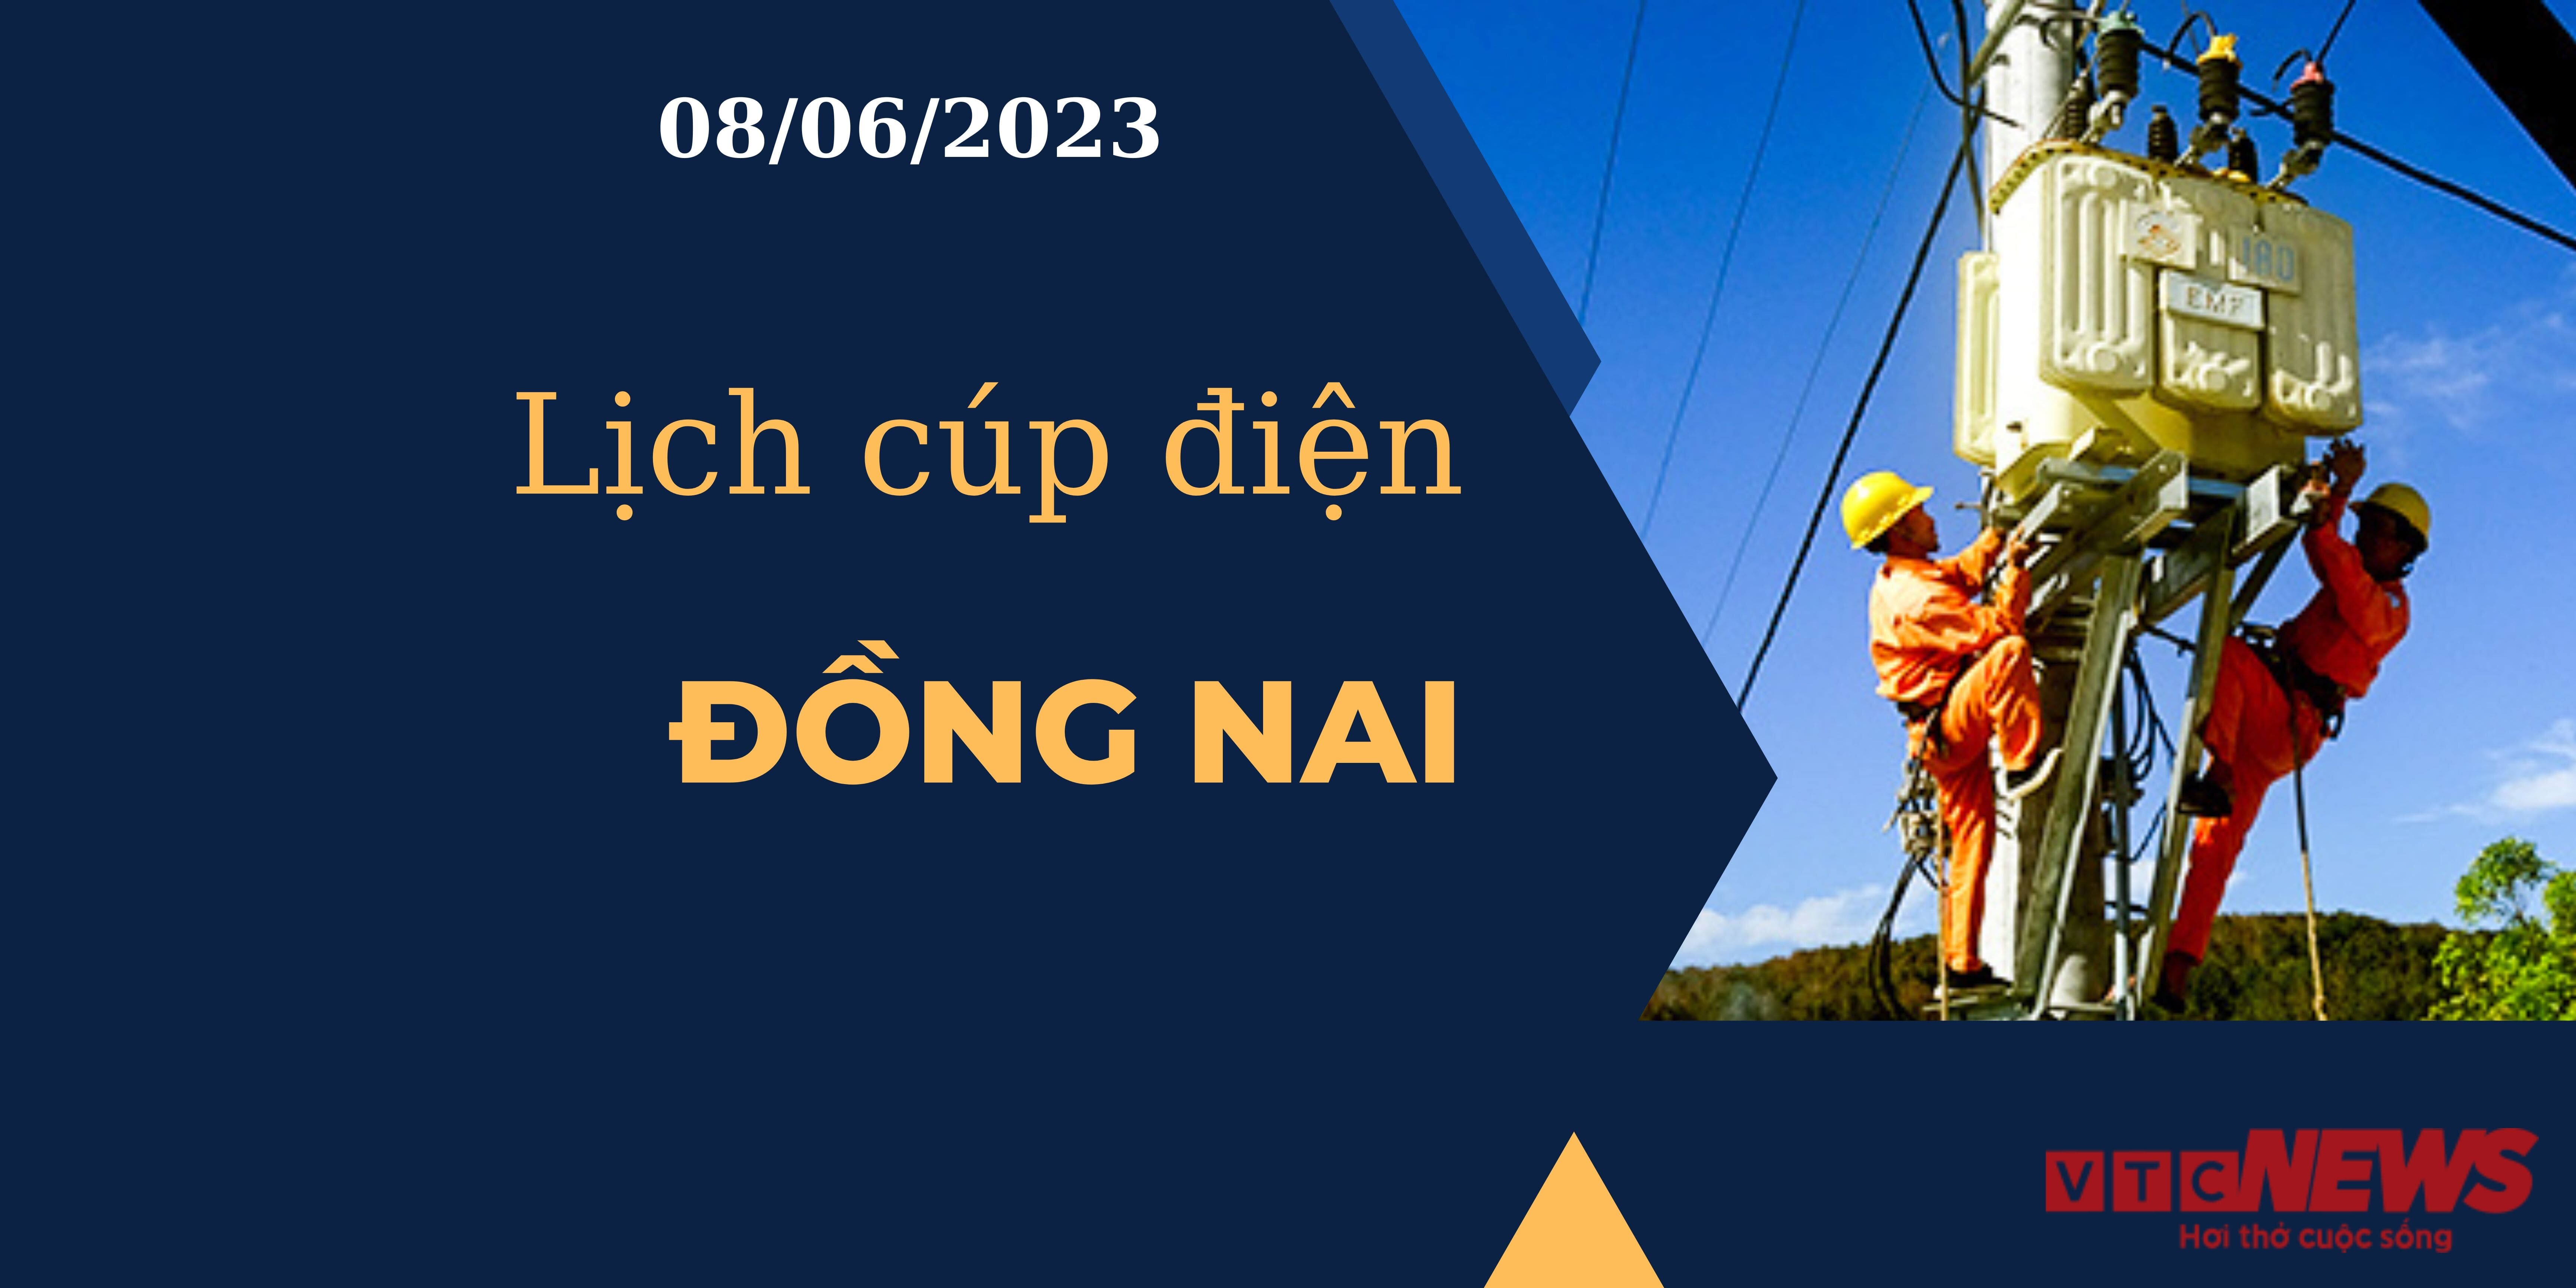 Lịch cúp điện hôm nay ngày 08/06/2023 tại Đồng Nai - 1